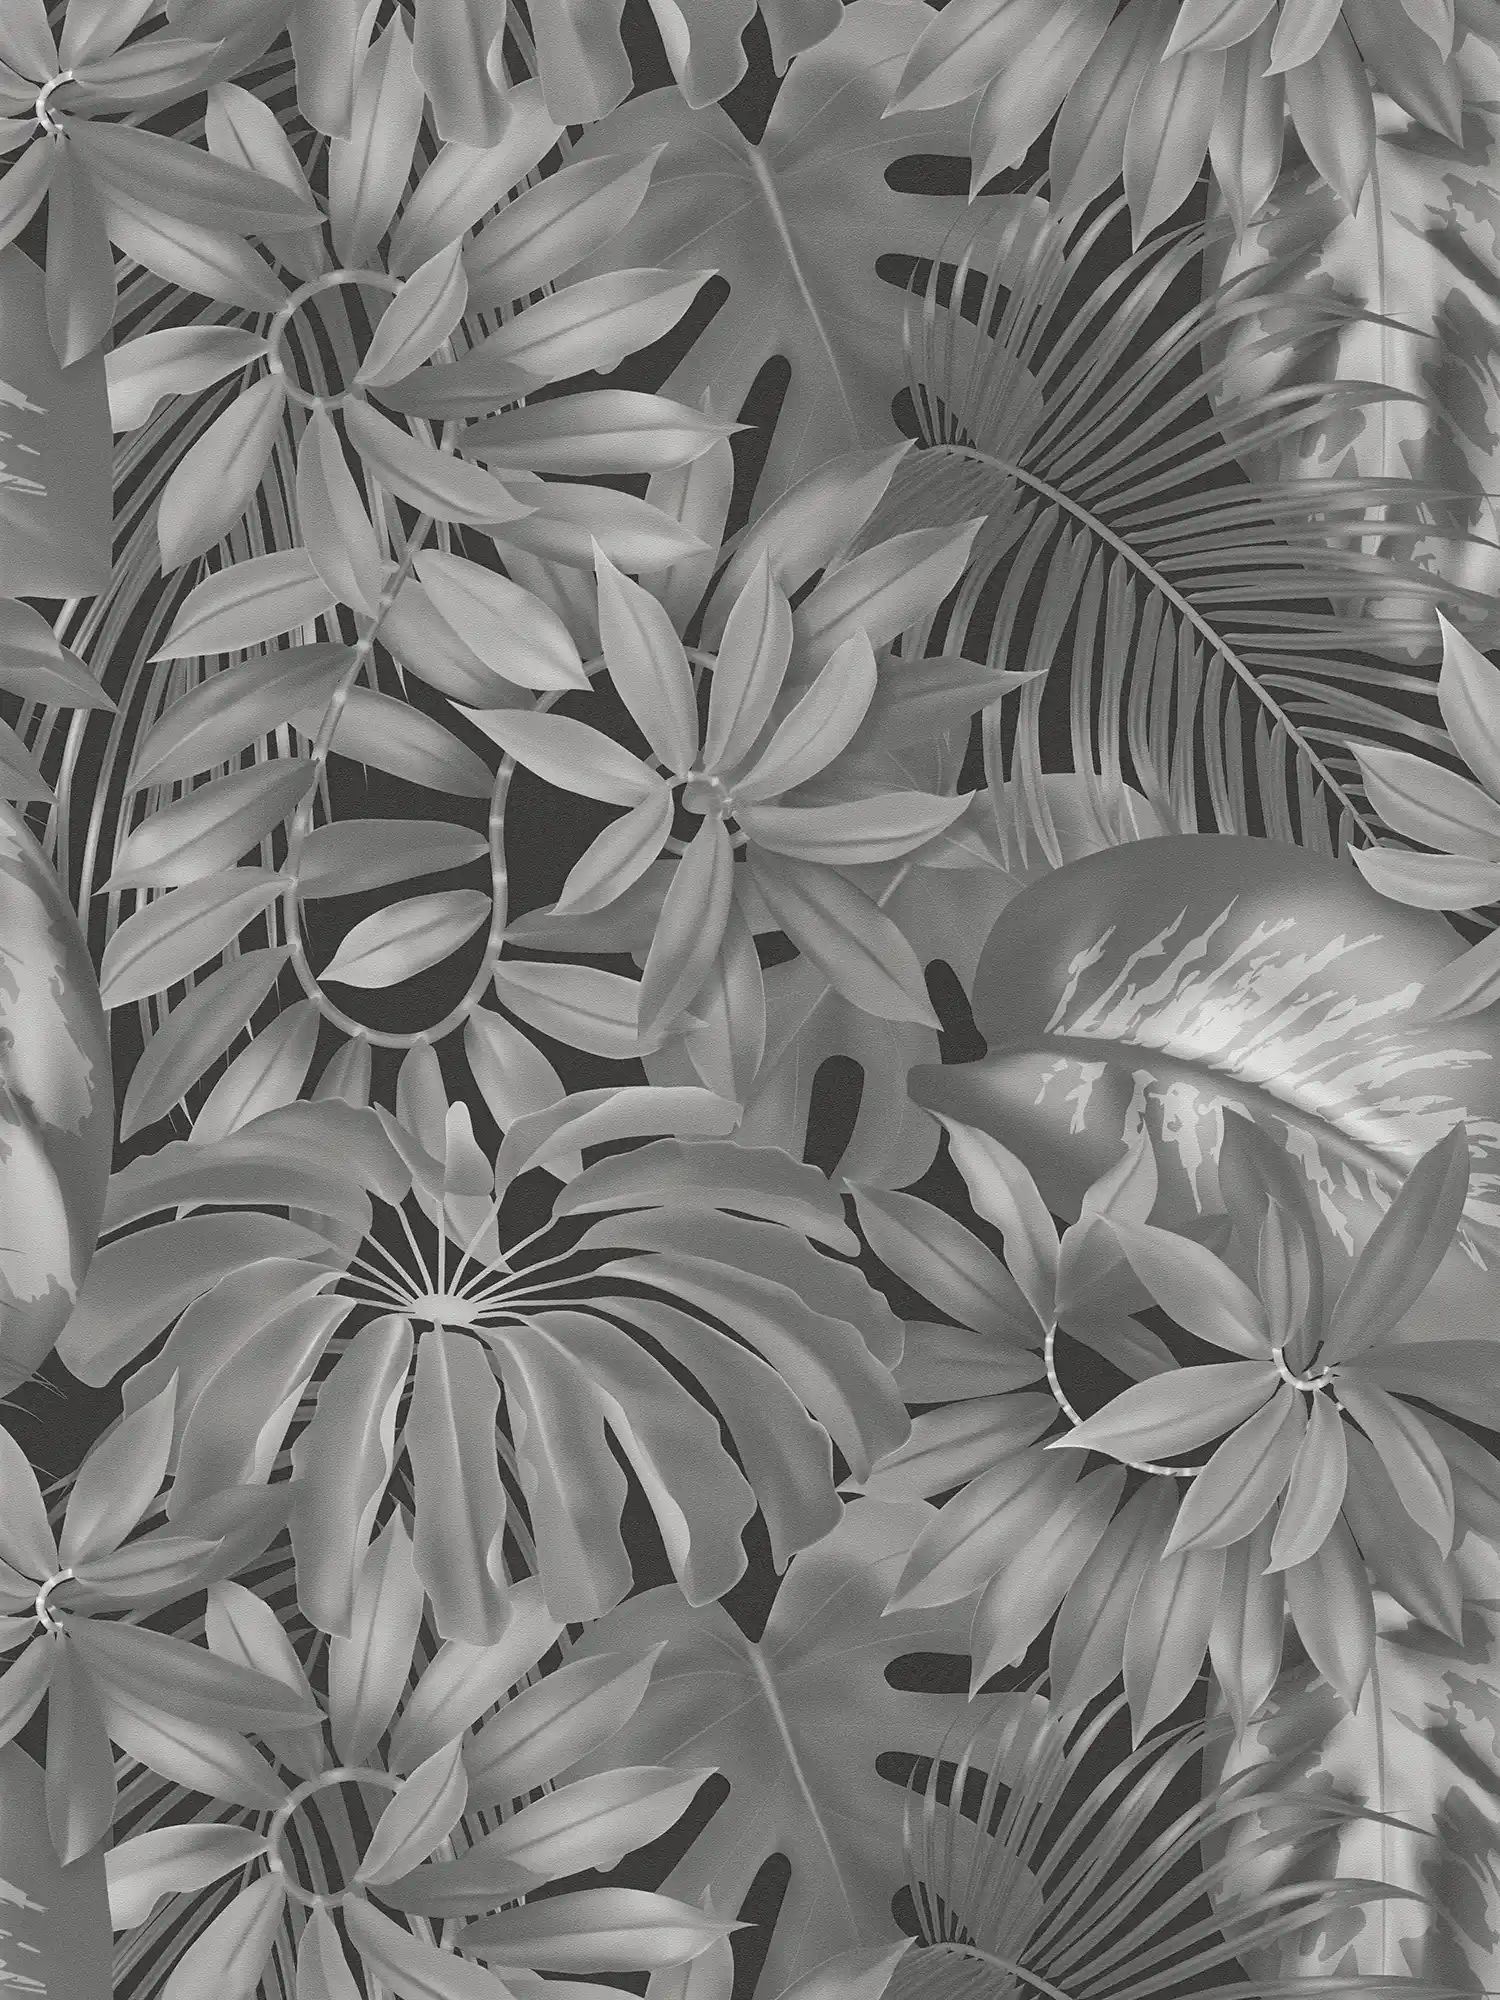         Blätter-Tapete Dschungel Muster – Grau, Schwarz
    